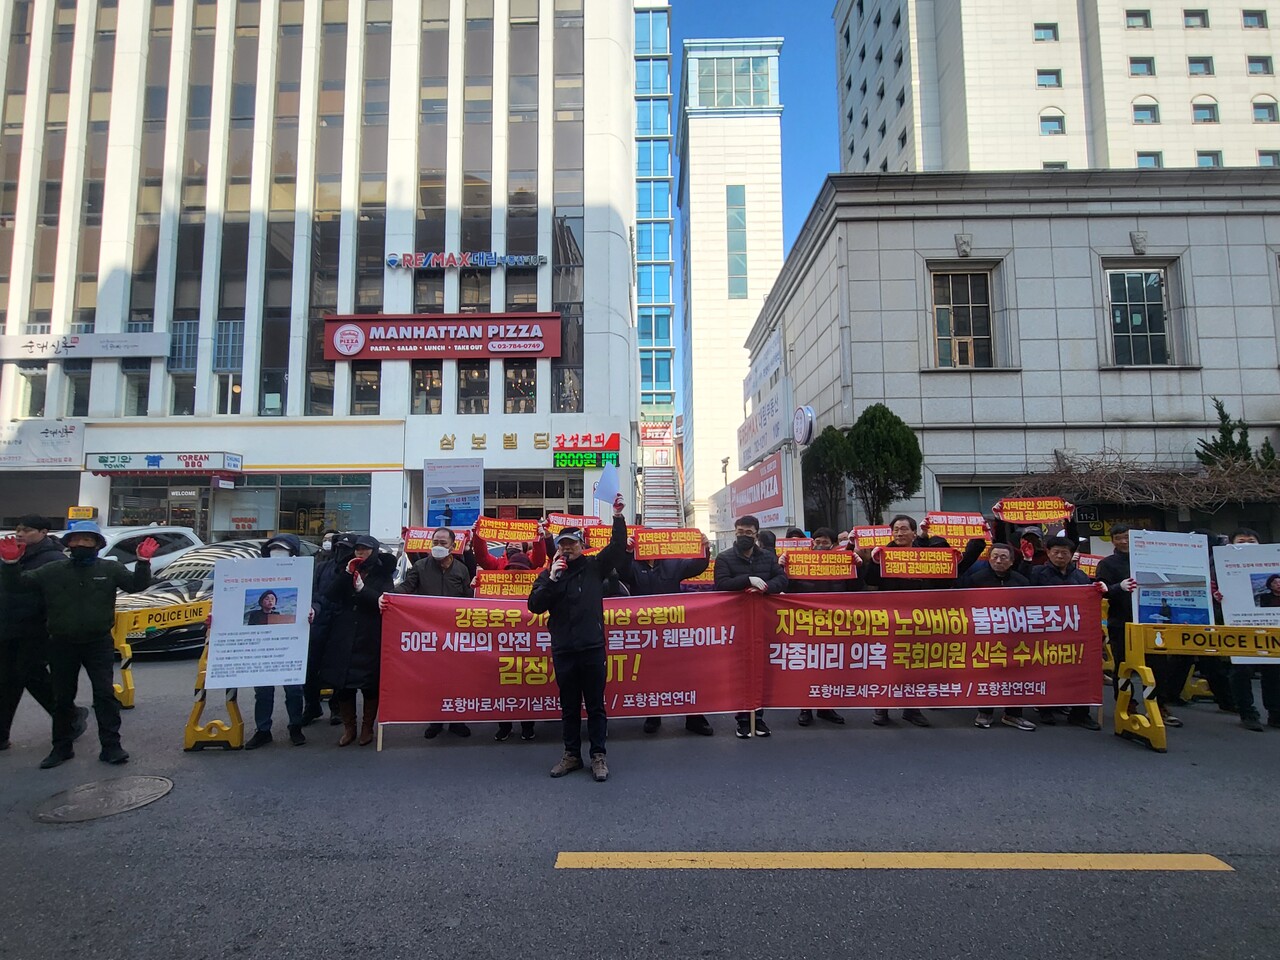 포항바로세우기실천운동본부와 포항참연연대는 16일 서울 여의도 국민의힘 중앙당사에서 김정재 의원(포항북)에 대한 공천 반대를 촉구하는 집회를 개최하고 있다.